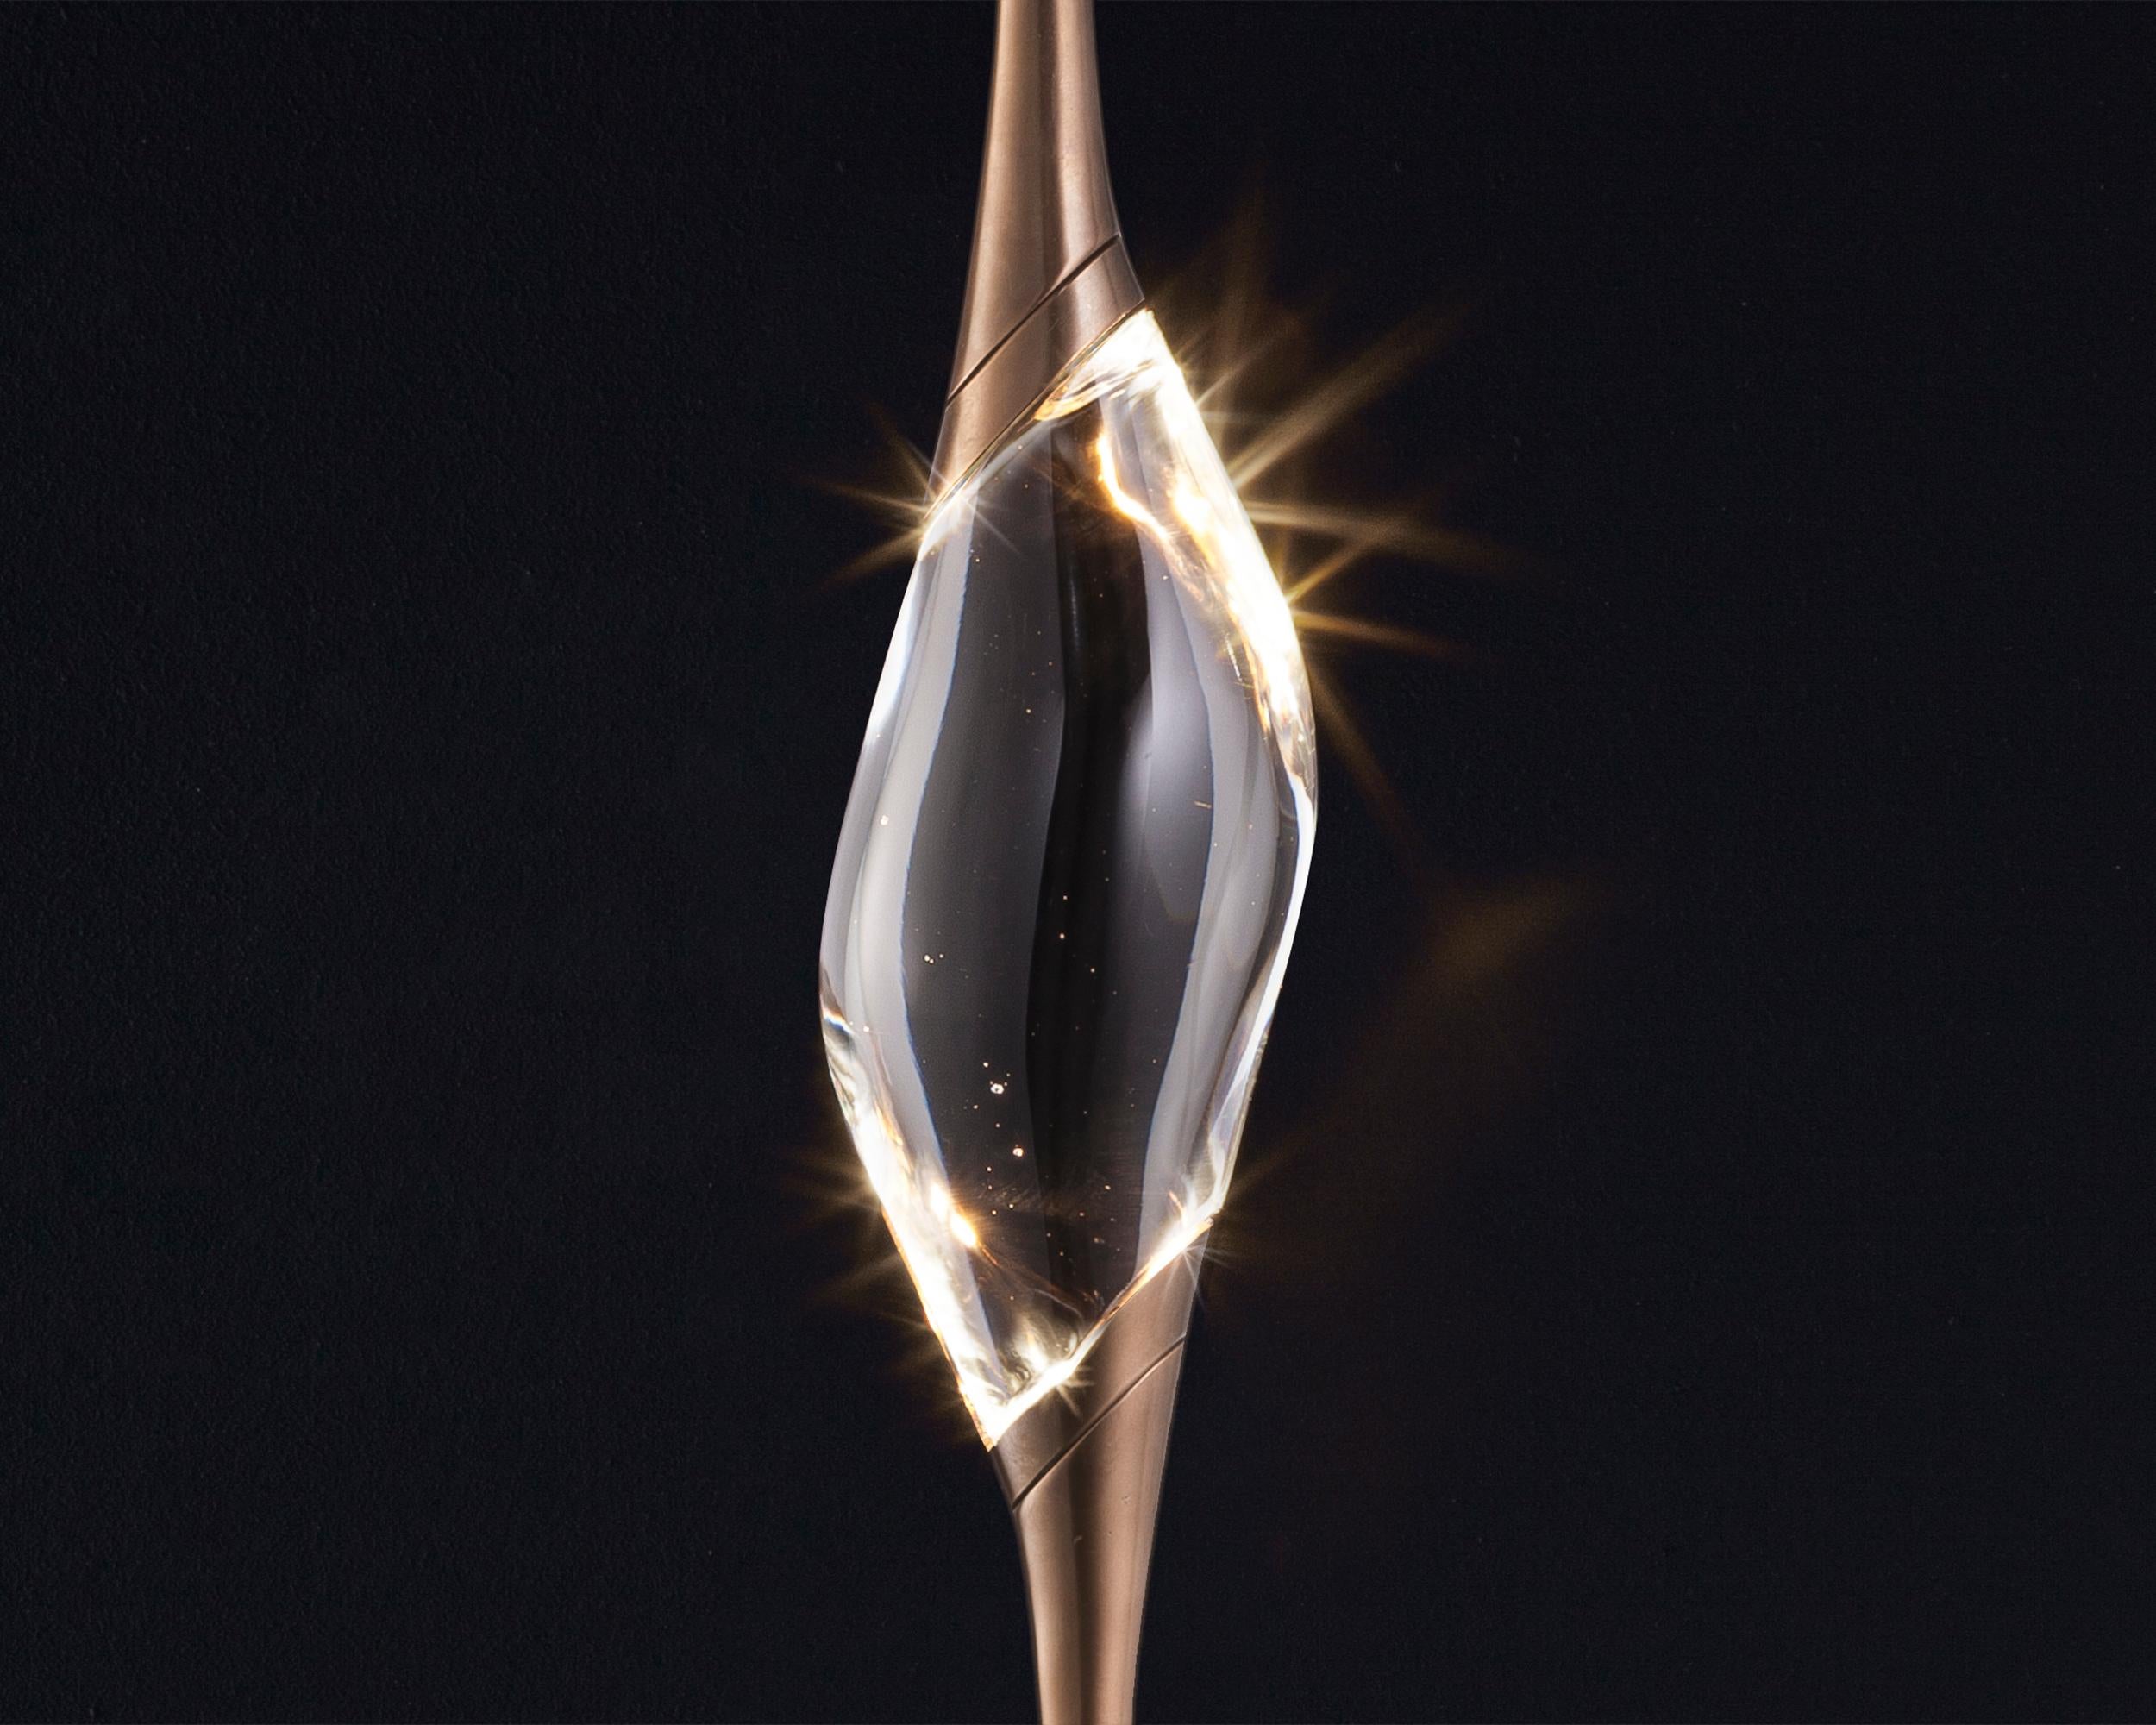 Il Pezzo 12 è una figura femminile sospesa nell'aria, che porta nel suo grembo la luce. È agile, raffinata, coinvolgente.
Il cristallo solido e limpidissimo, illuminato brillantemente da due LED, diffonde la luce ambientale e proietta disegni